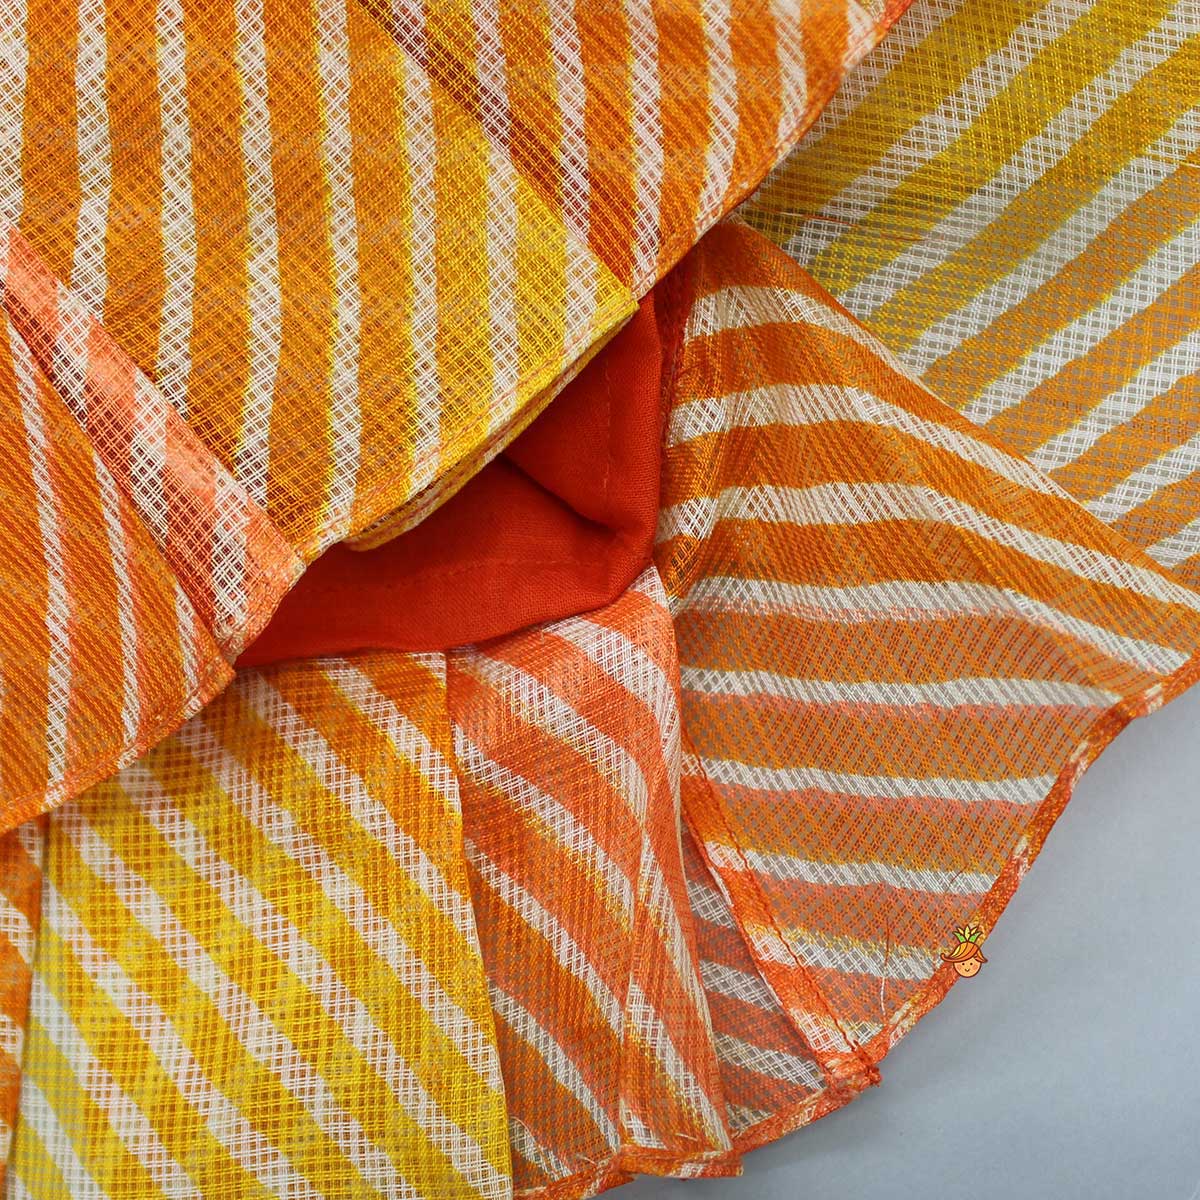 Leheriya Printed Puff Sleeves Top And Orange Bloomer